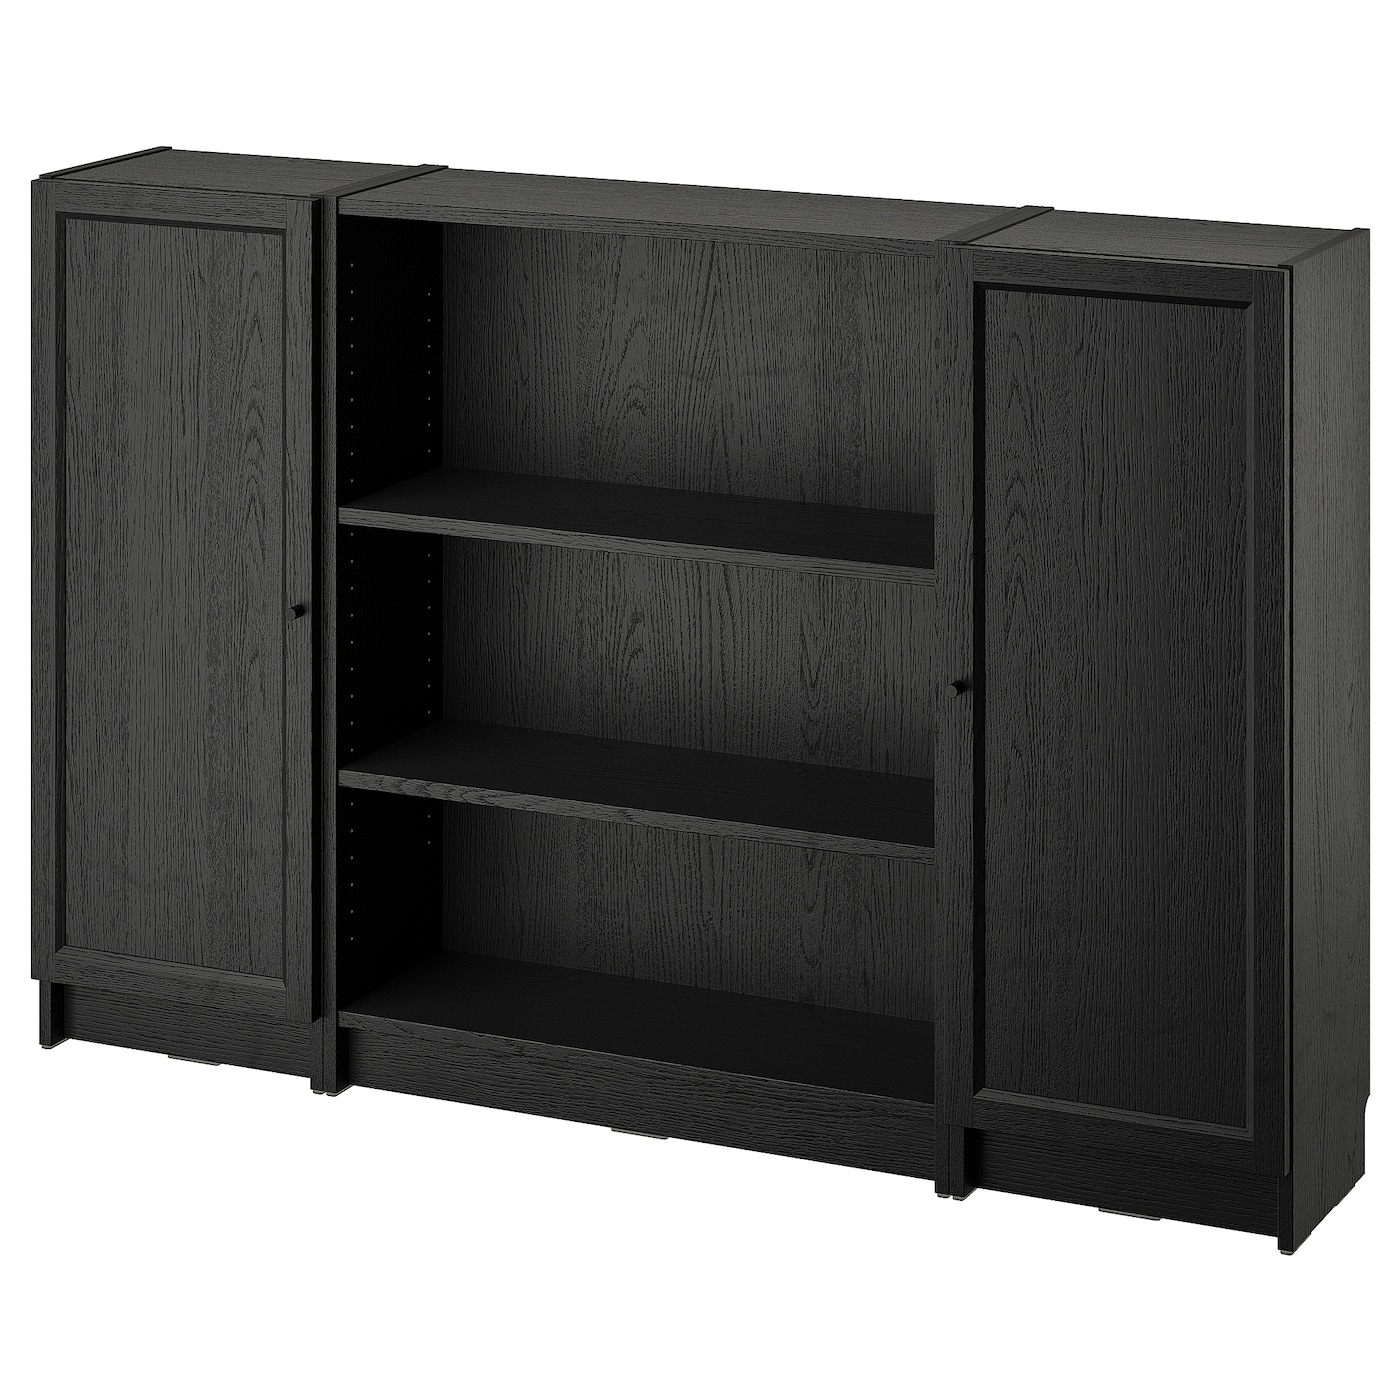 Книжный шкаф -  BILLY / OXBERG IKEA/ БИЛЛИ/ ОКСБЕРГ ИКЕА, 160х106 см,  черный